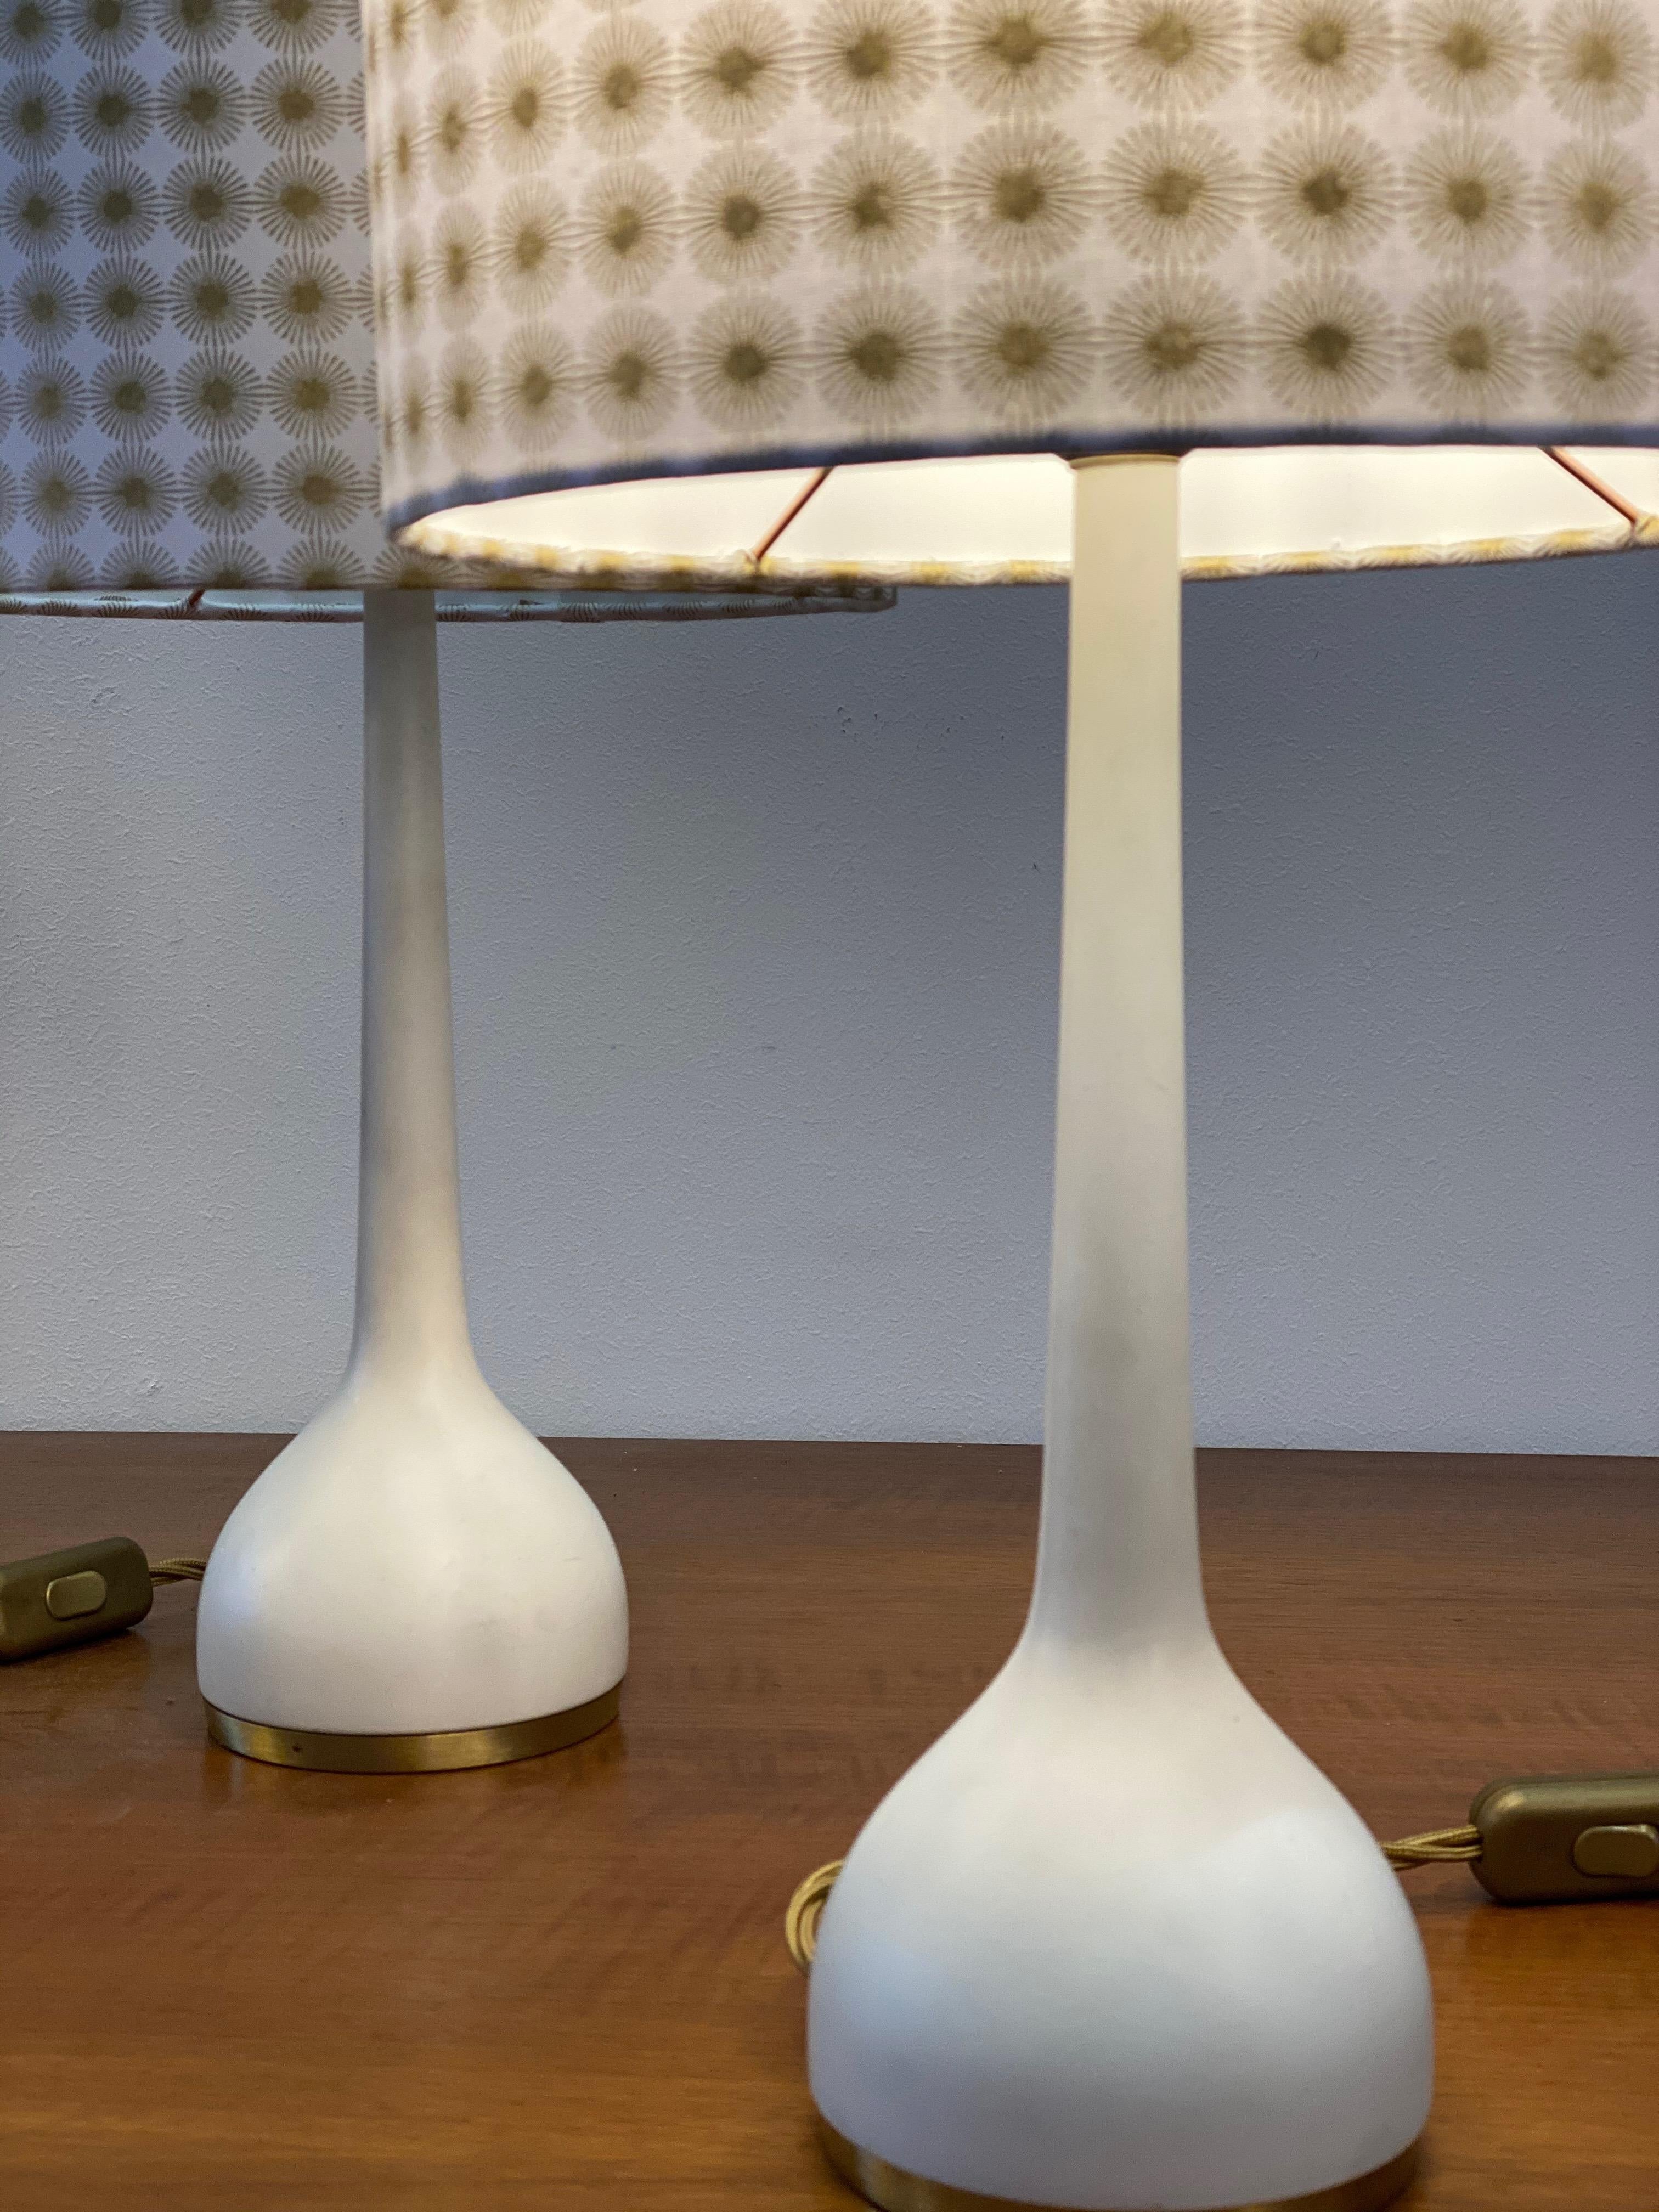 Diese Tischlampen wurden in den 1960er Jahren von Hans-Agne Jakobsson entworfen und von Hans Agne Jakobsson AB in Markaryd, Schweden, hergestellt. Sie besteht aus einem weiß lackierten Sockel mit originalen Stoffschirmen. Sowohl das Becken als auch